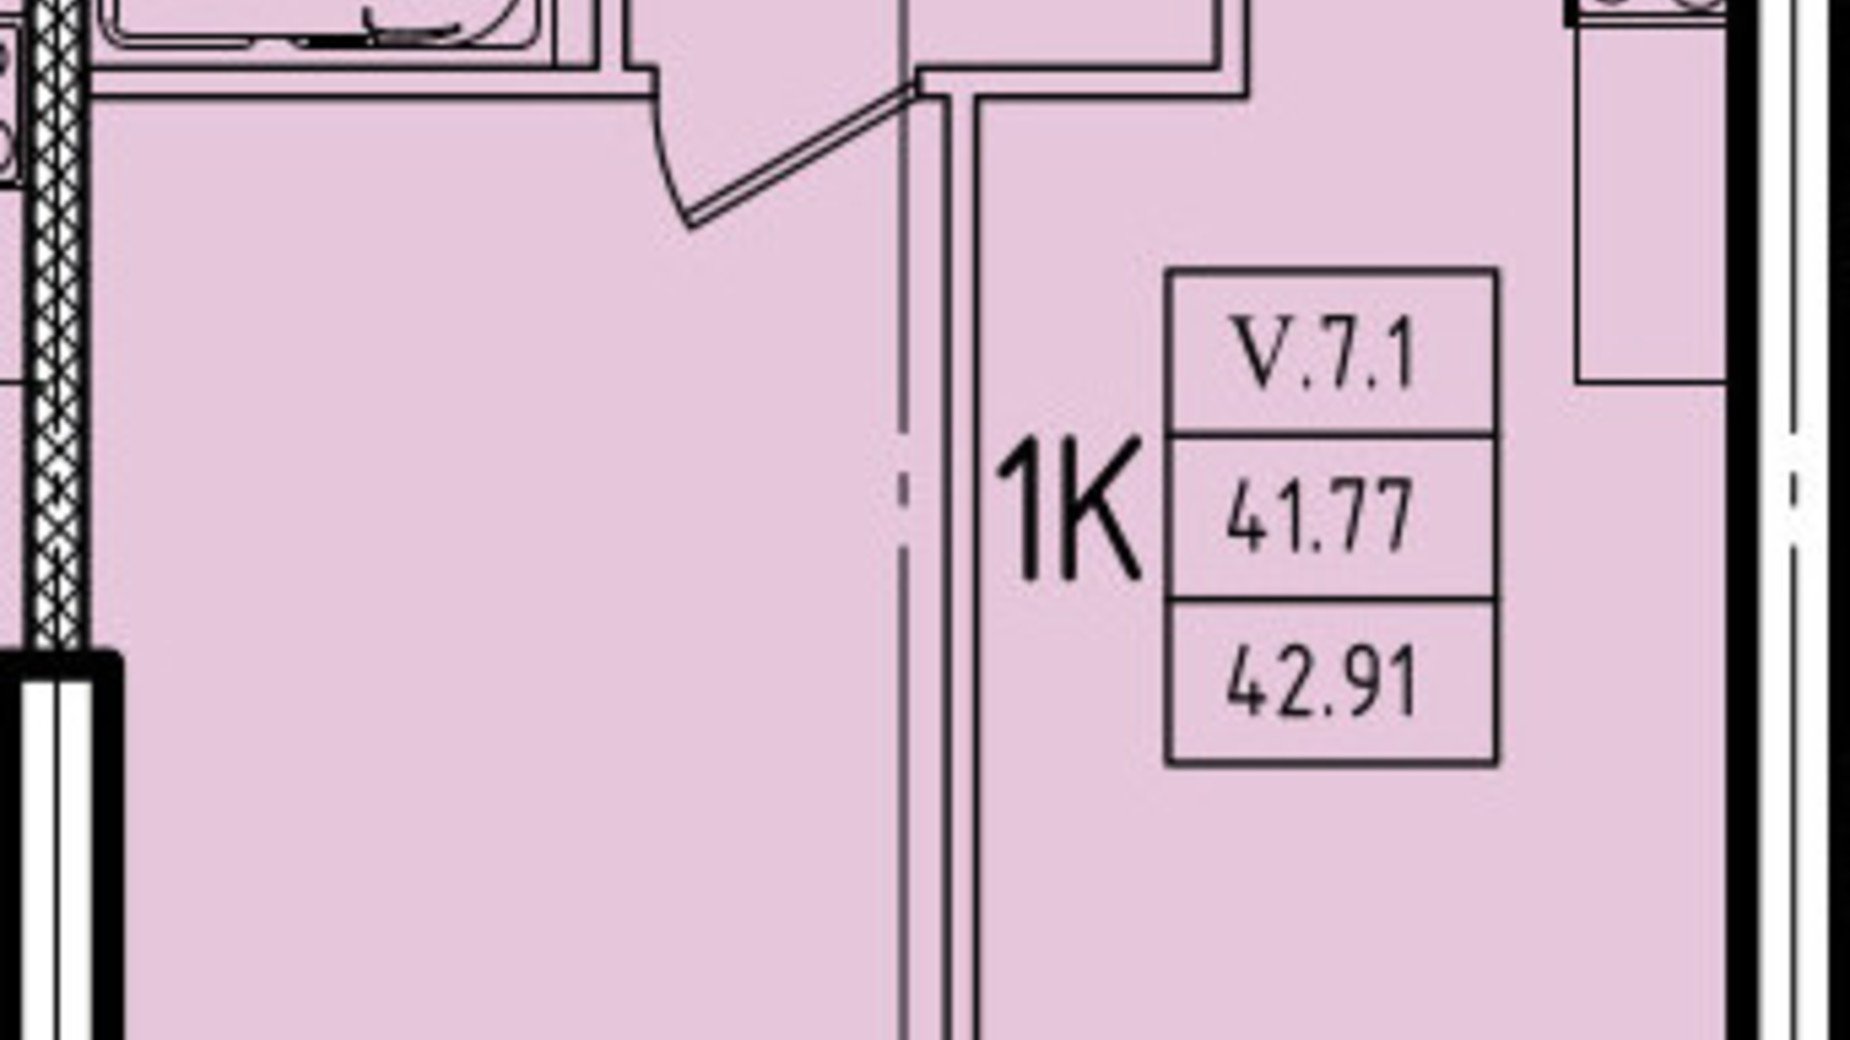 Планування 1-кімнатної квартири в ЖК Еллада 42.91 м², фото 602439